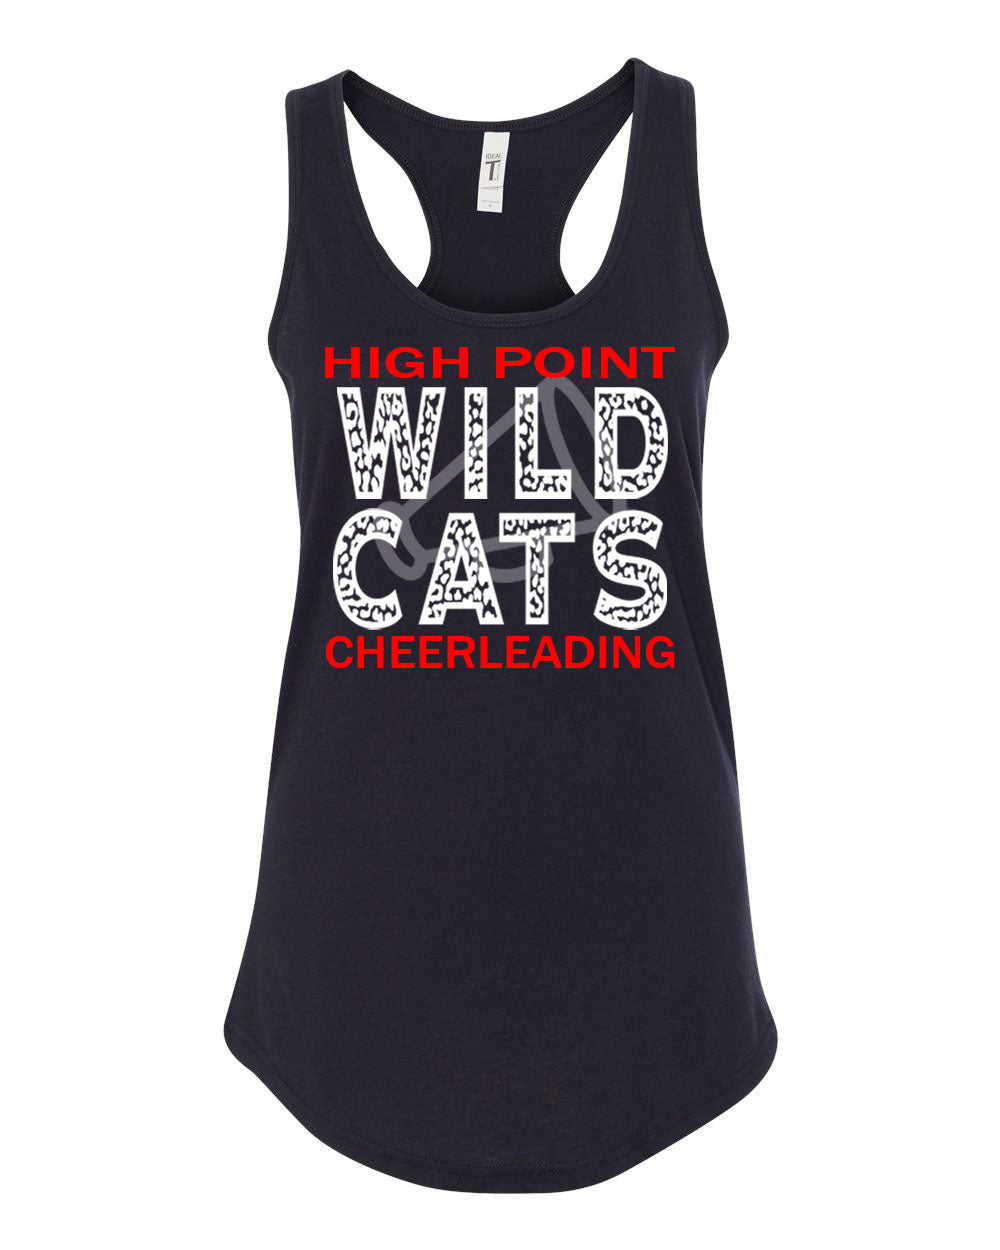 Wildcats Cheer Design 1 Tank Top